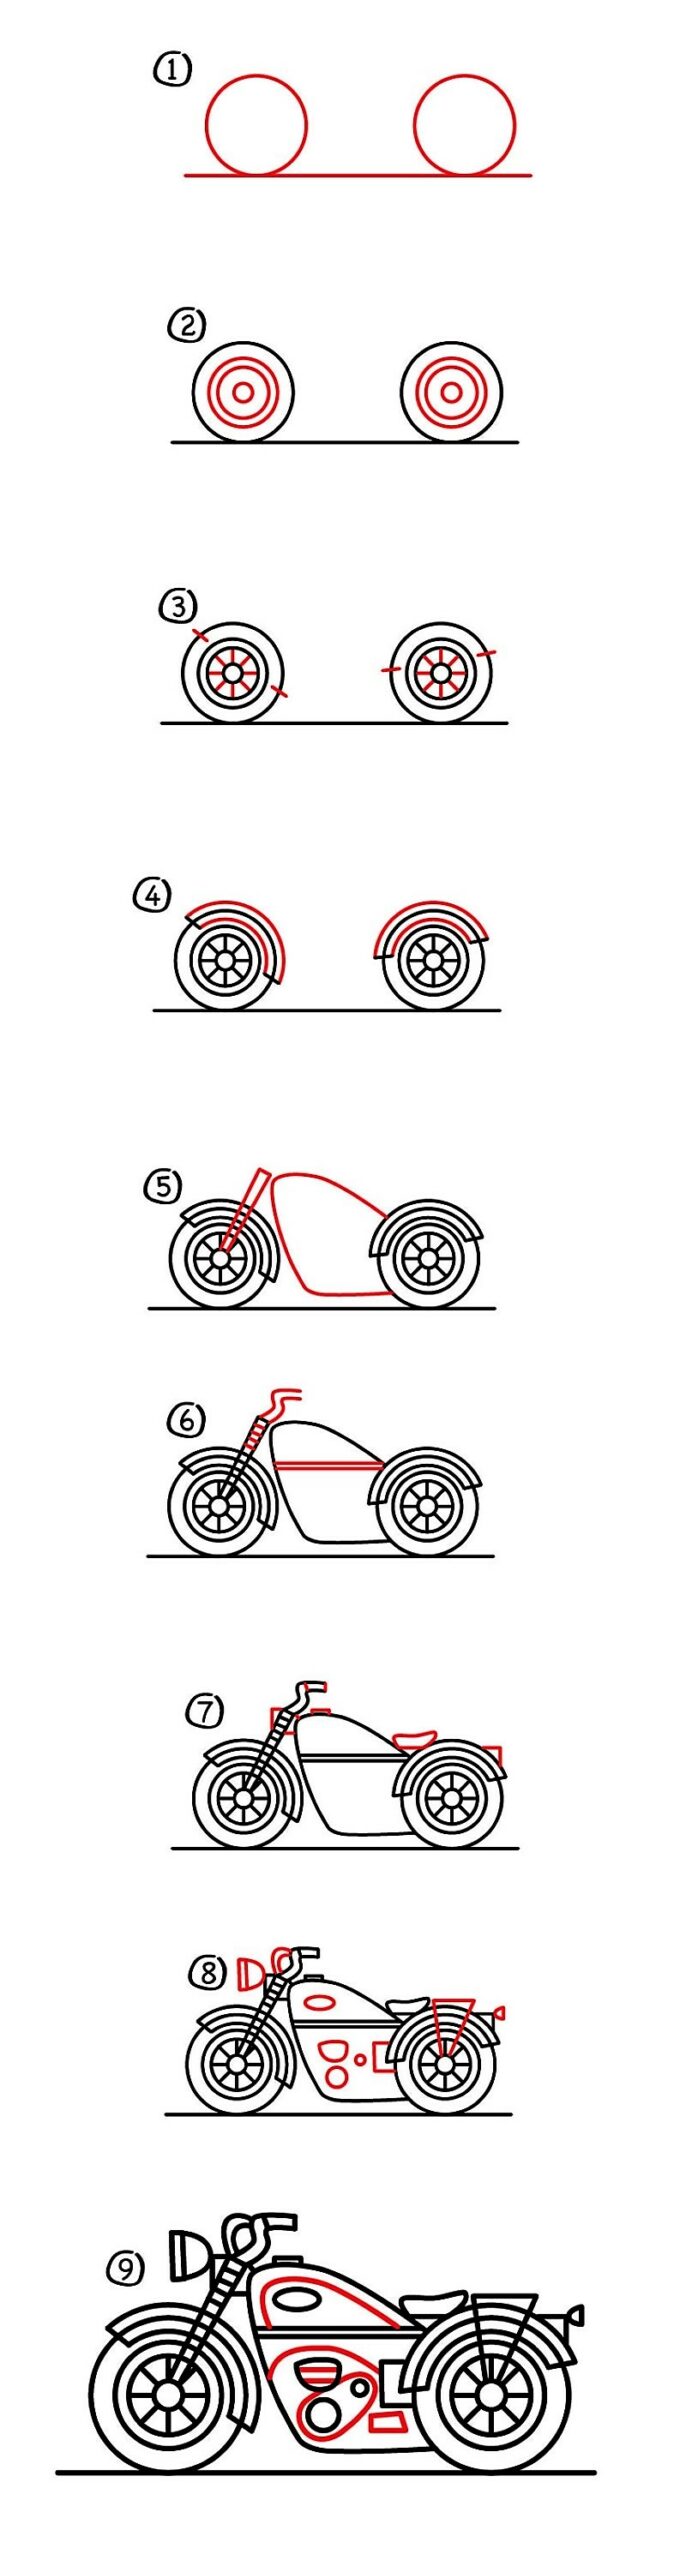 Moottoripyörä idea 15 piirustus